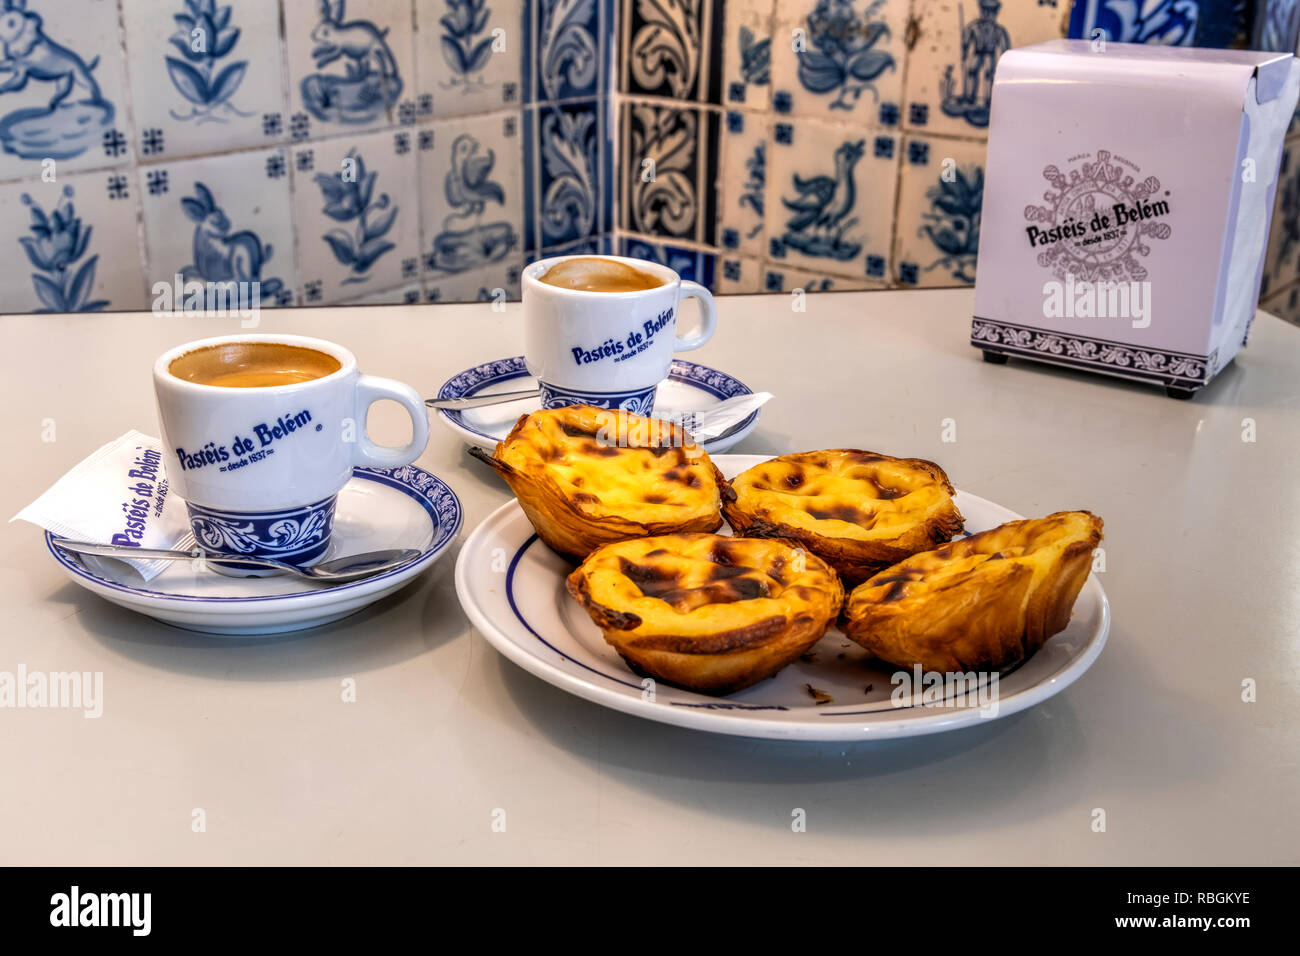 Pastel de Belem oder pasteis de nata Pudding serviert mit einer Tasse Kaffee in der historischen pasteis de belem Cafe in Belem, Lissabon, Portugal Stockfoto